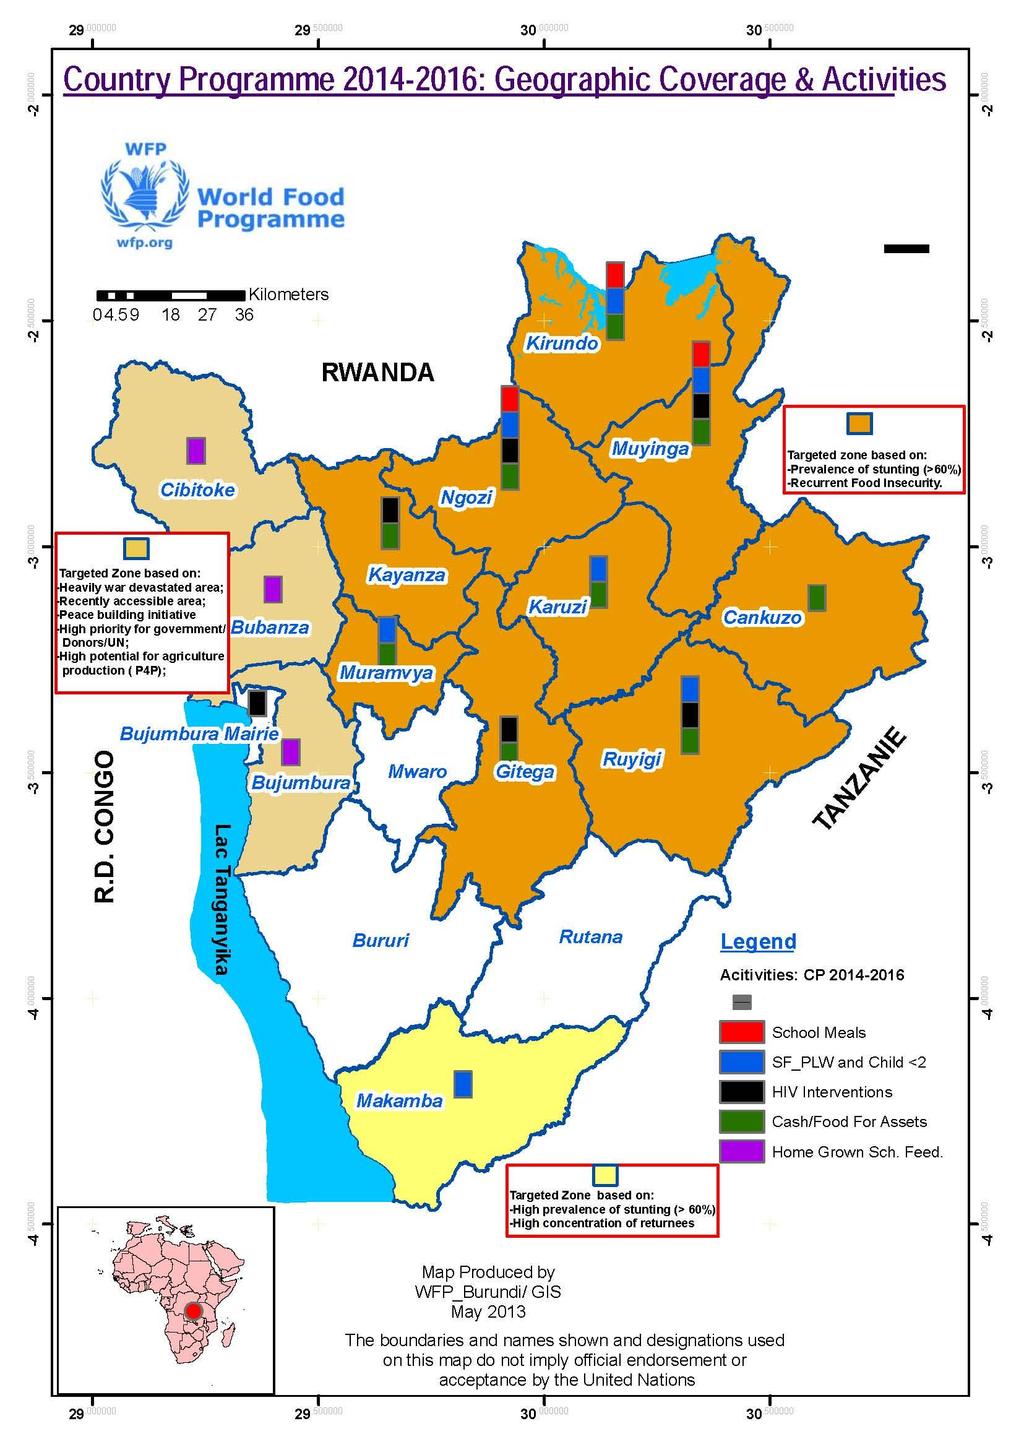 República Democrática del Congo 24 WFP/EB.2/2013/7-B/4/Rev.